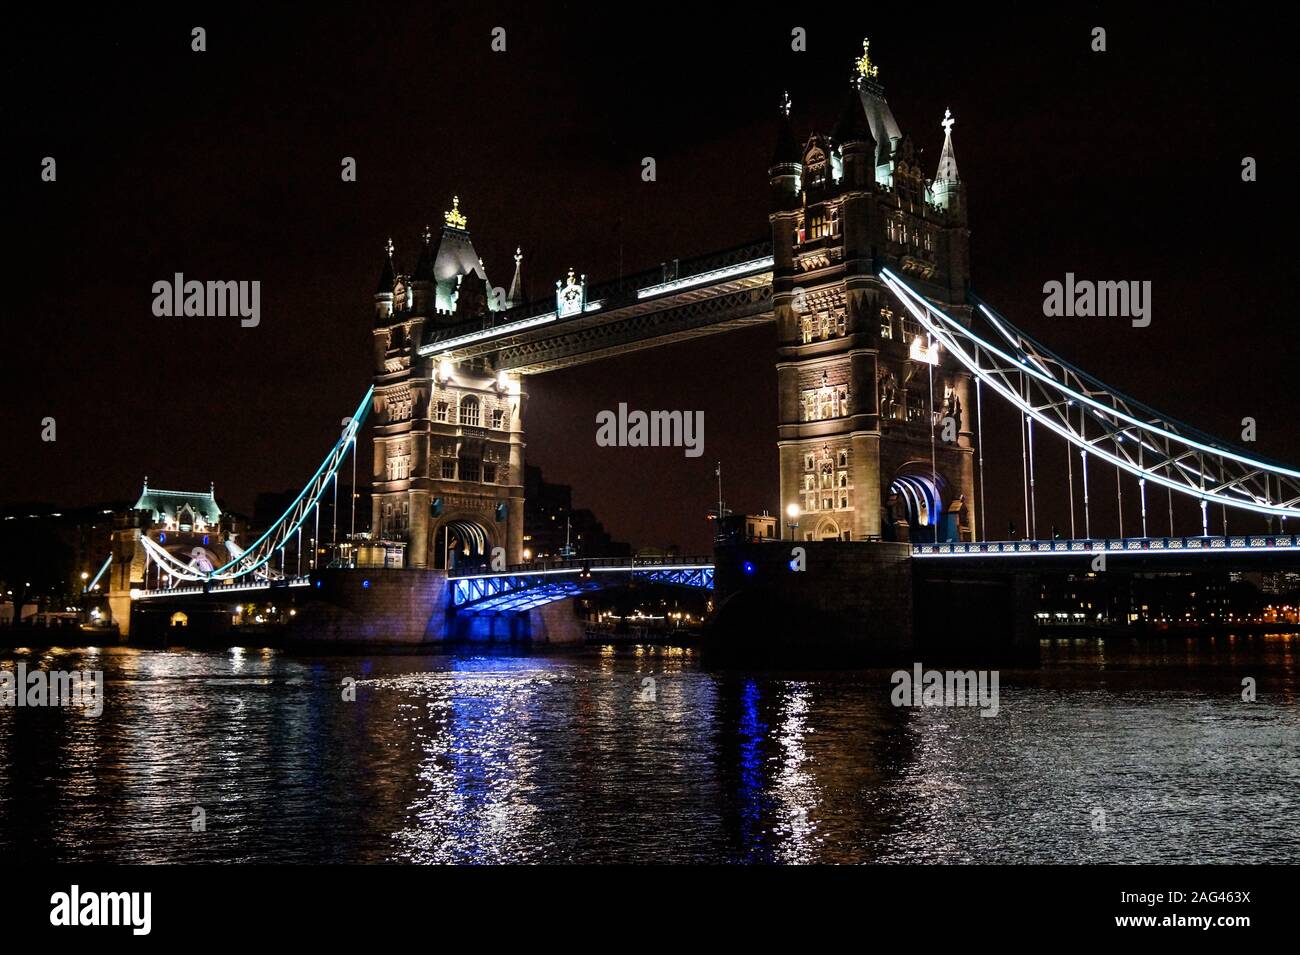 Schöne Aufnahme der beleuchteten Tower Bridge in London Nacht mit einem total schwarzen Hintergrund Stockfoto